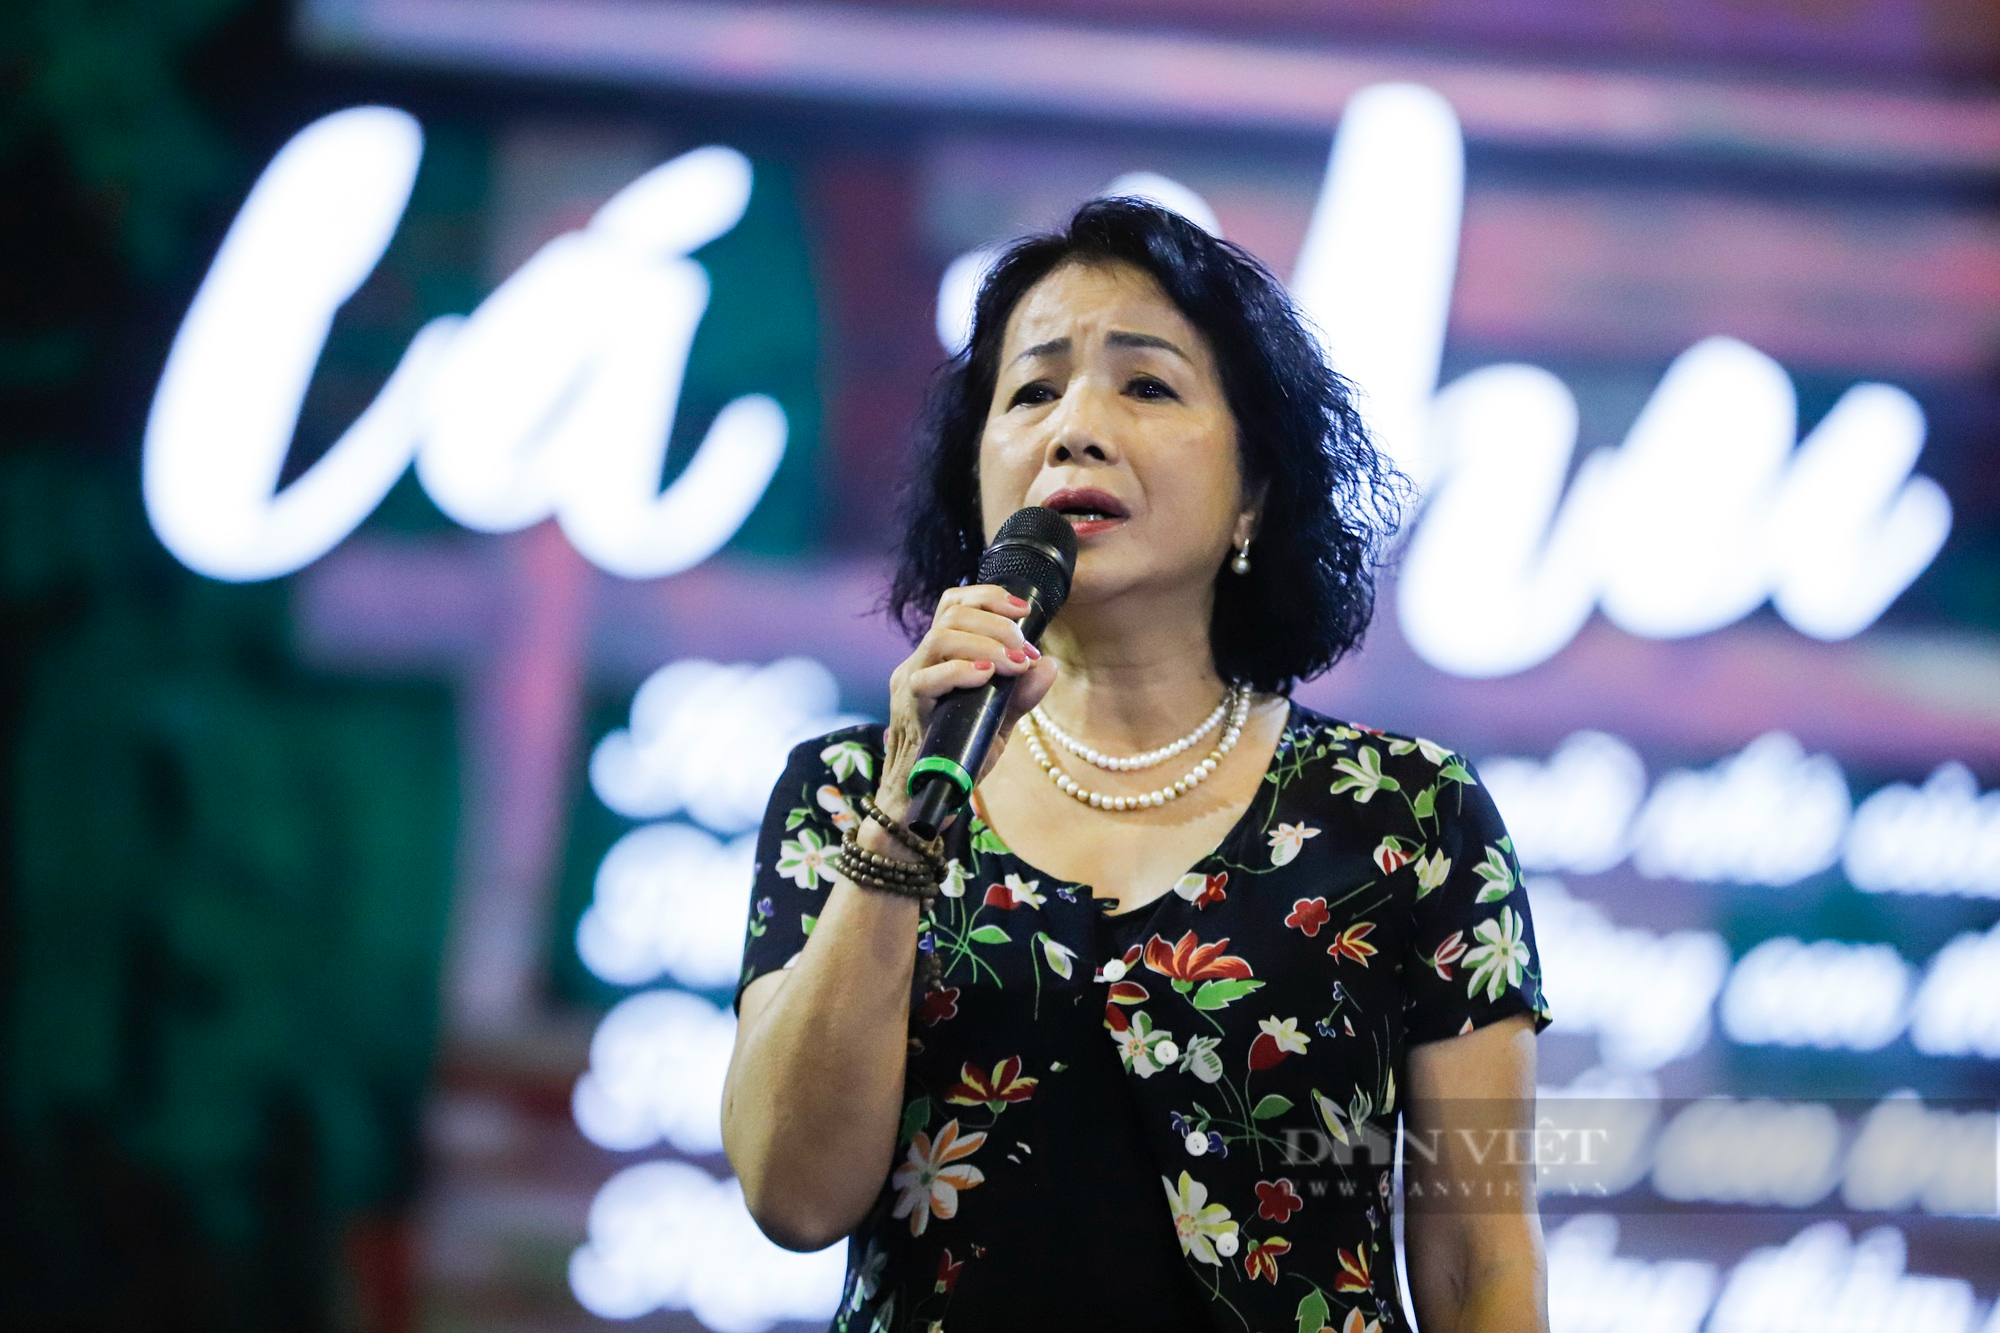 Diva Mỹ Linh bật mí 2 ca khúc hát trong đêm-thơ-nhạc kịch tưởng nhớ Lưu Quang Vũ - Ảnh 4.